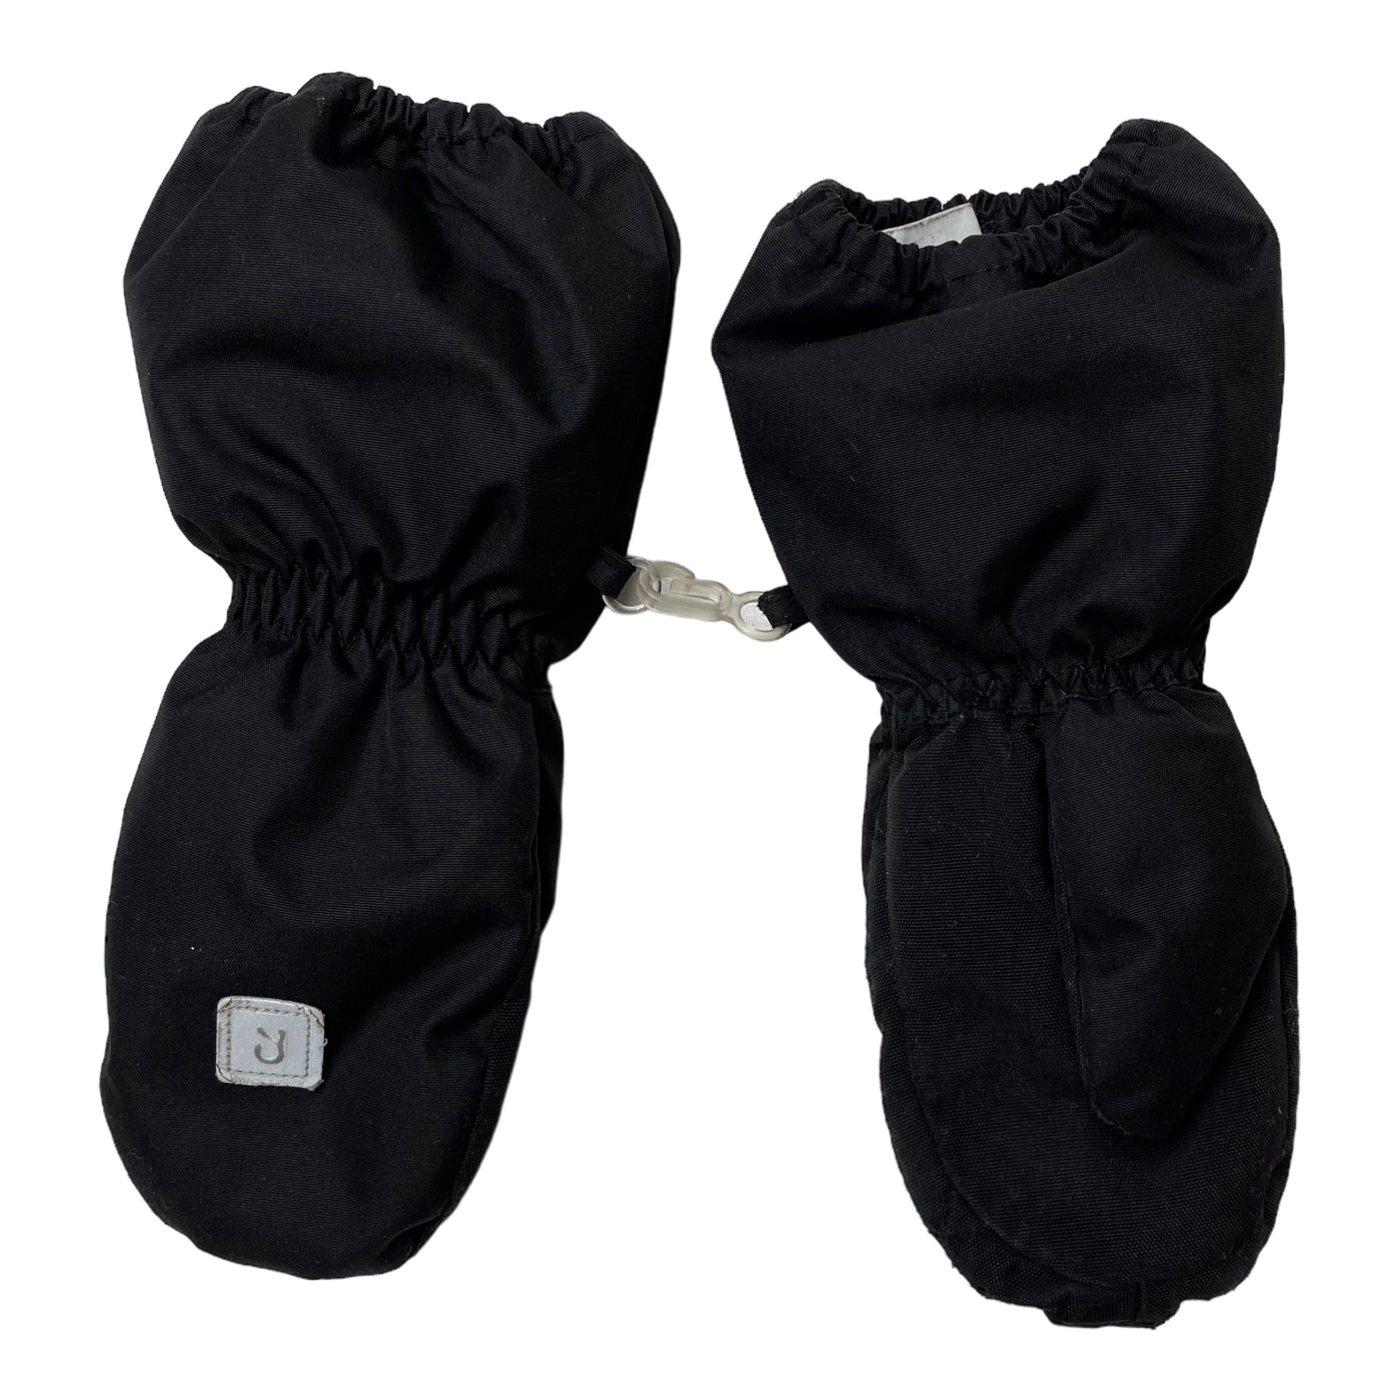 Reima tassu gloves, black | 3 years